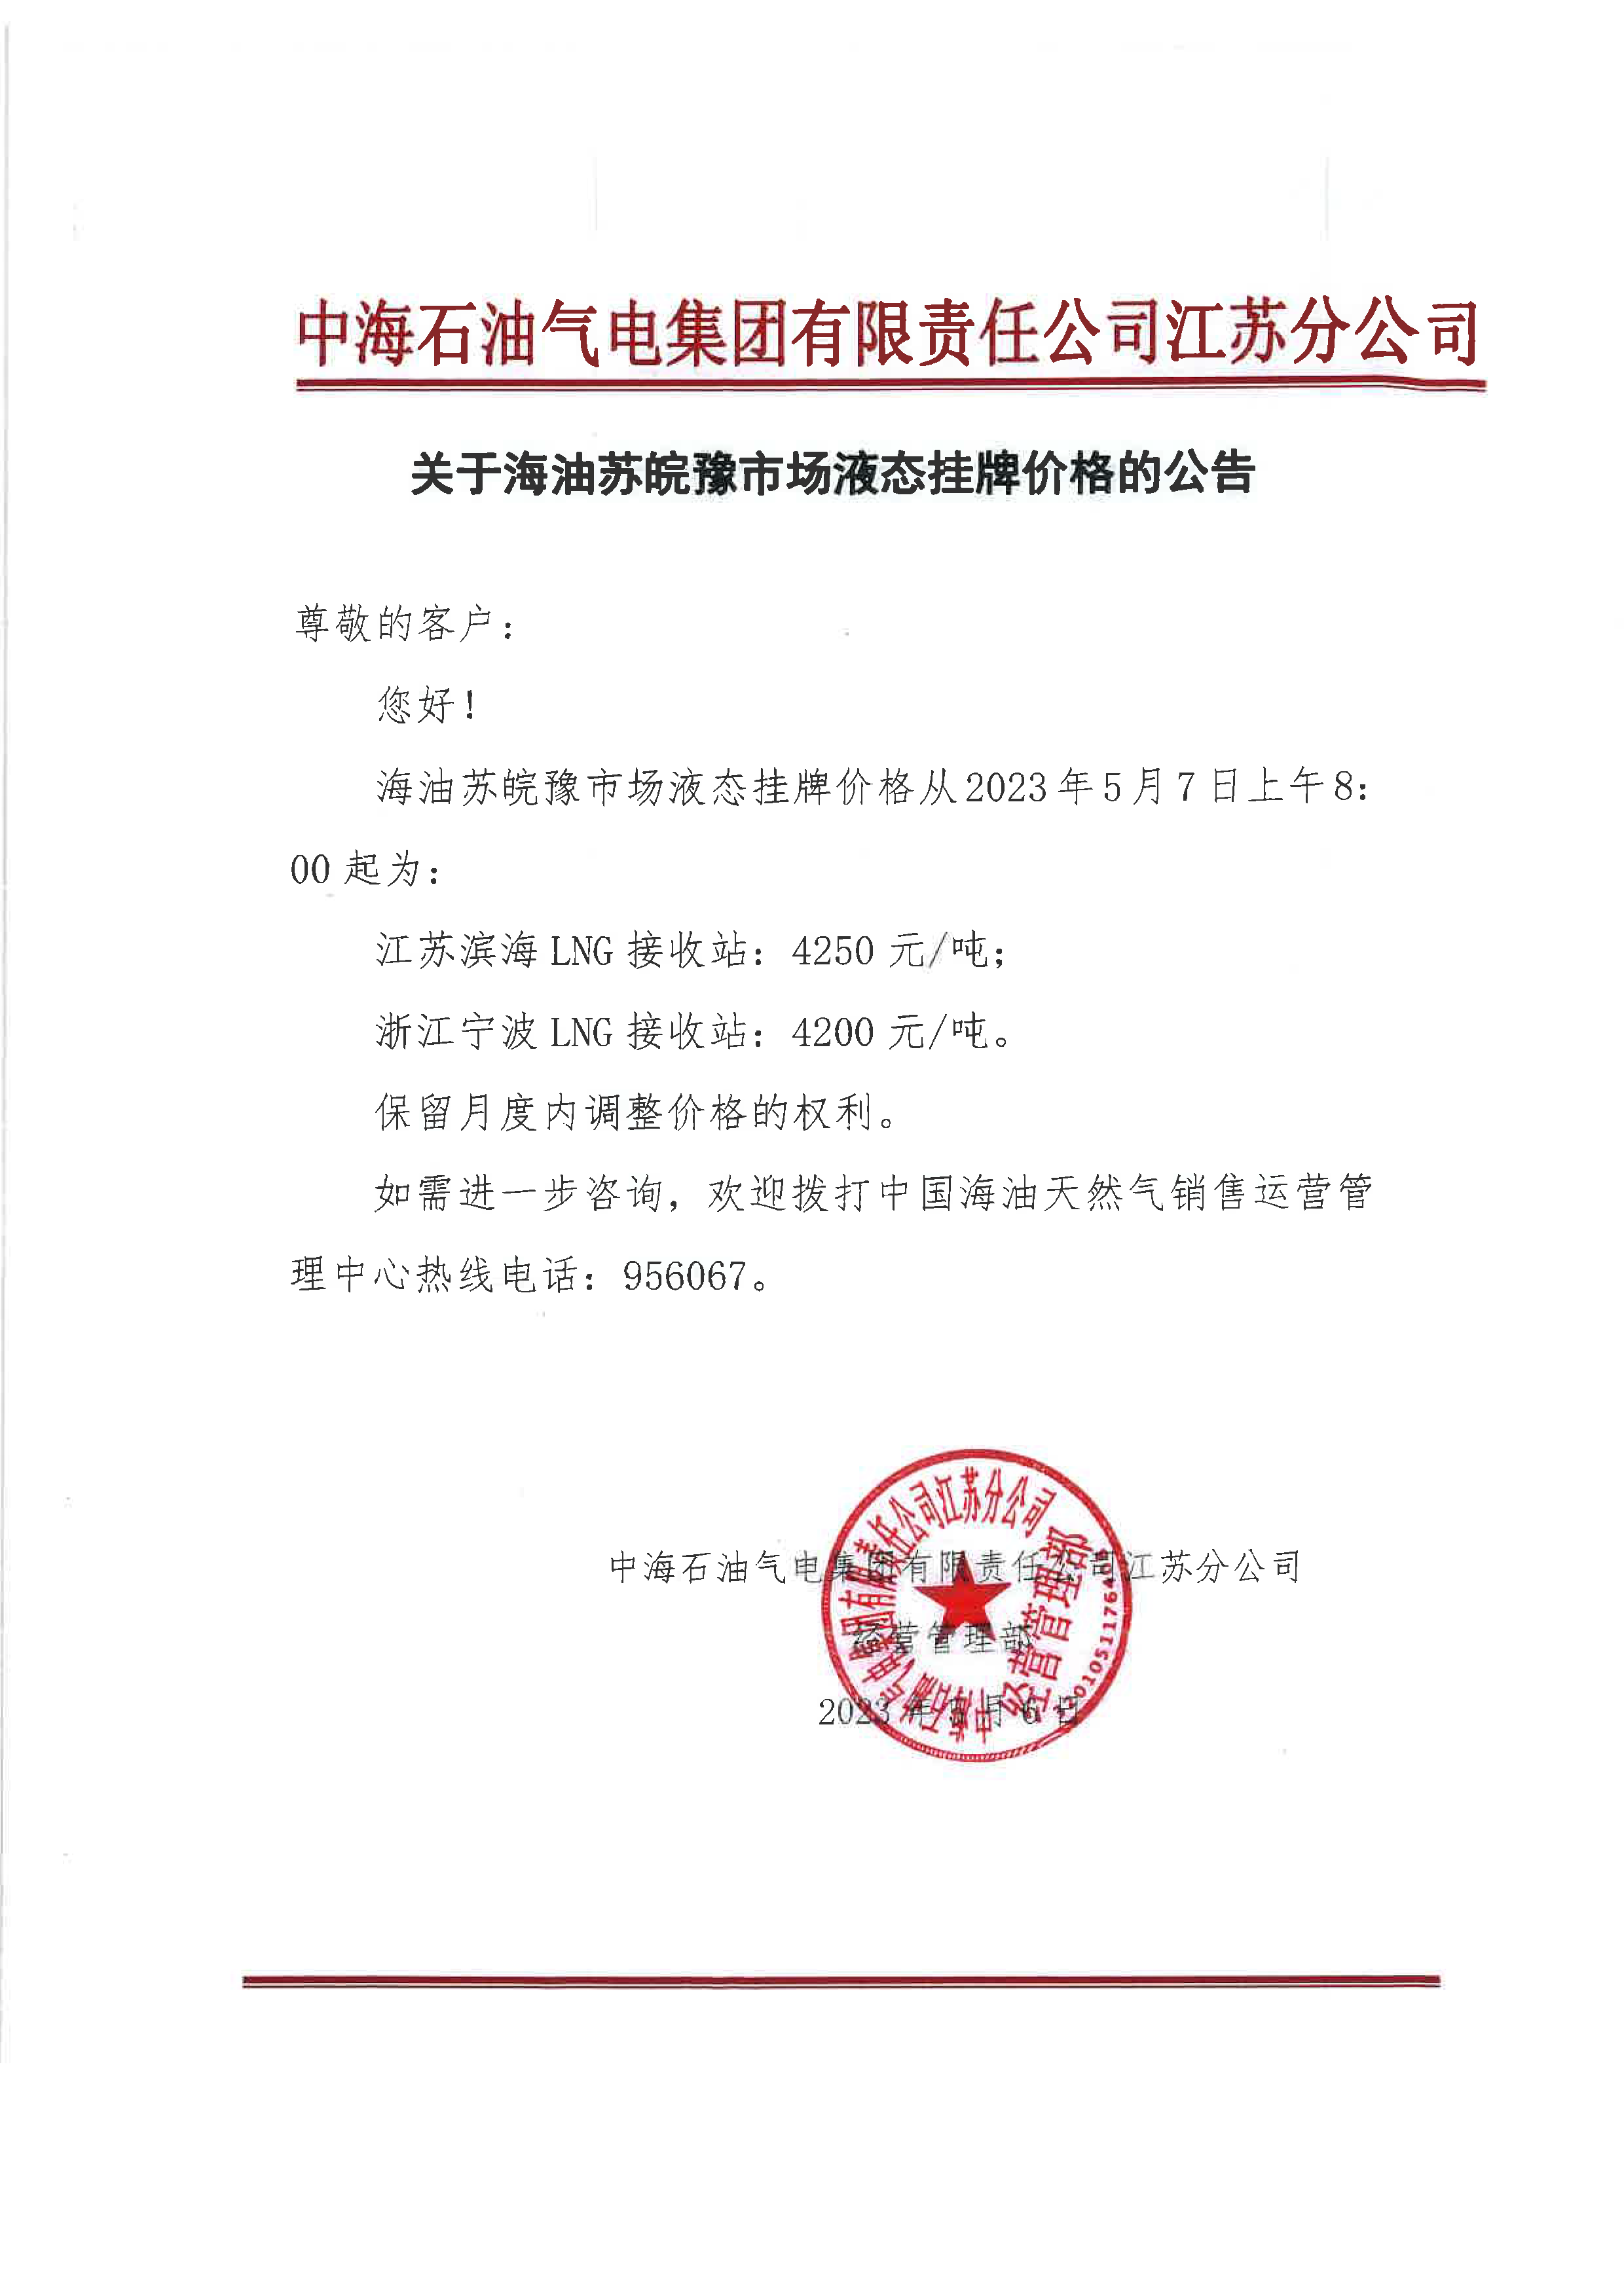 中海油江苏分公司关于5月7日华东苏皖市场价格调整公告.png